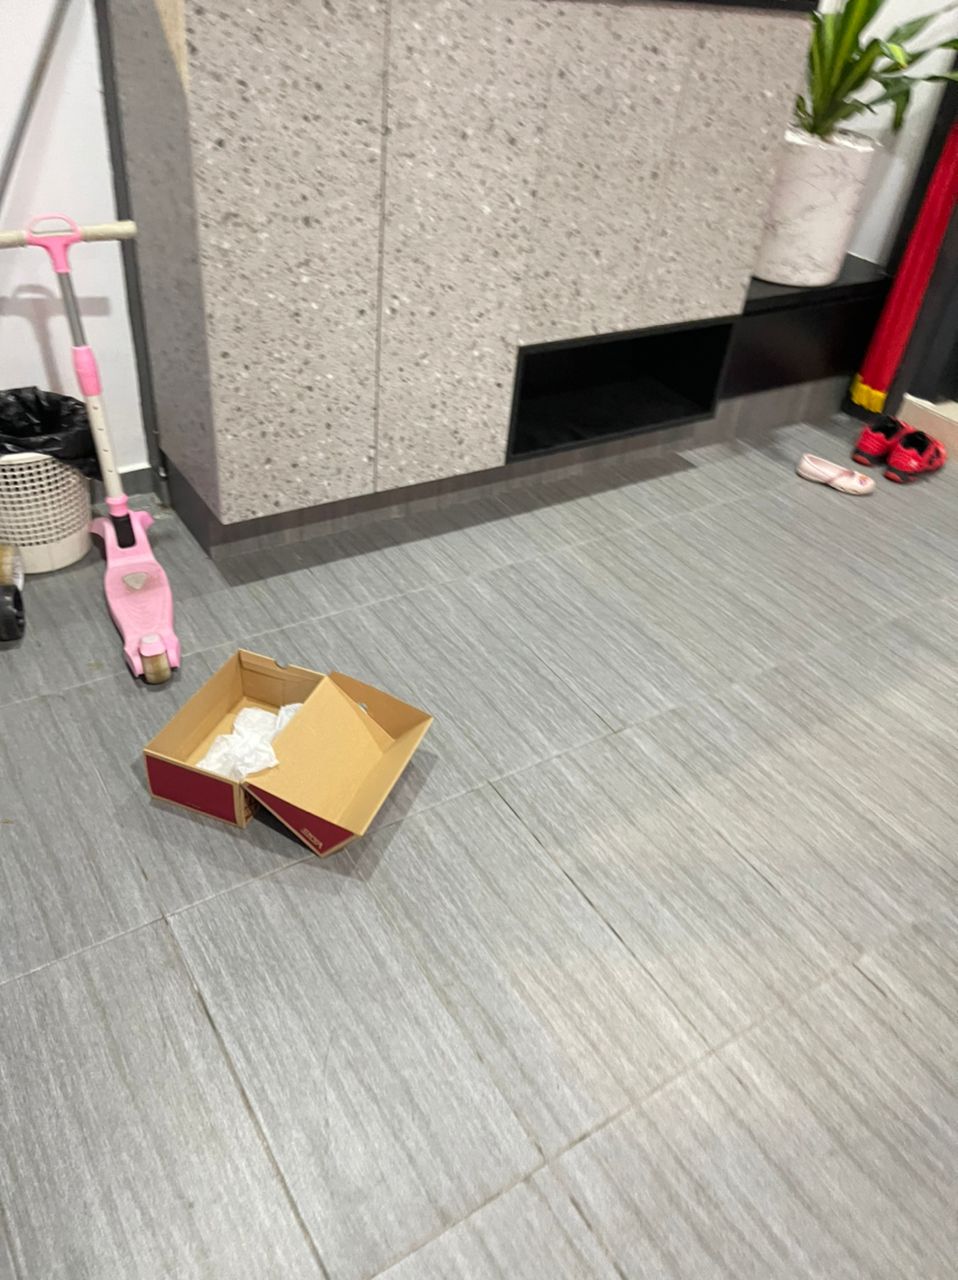 小偷偷走鞋子后，将鞋盒丢弃在地上。